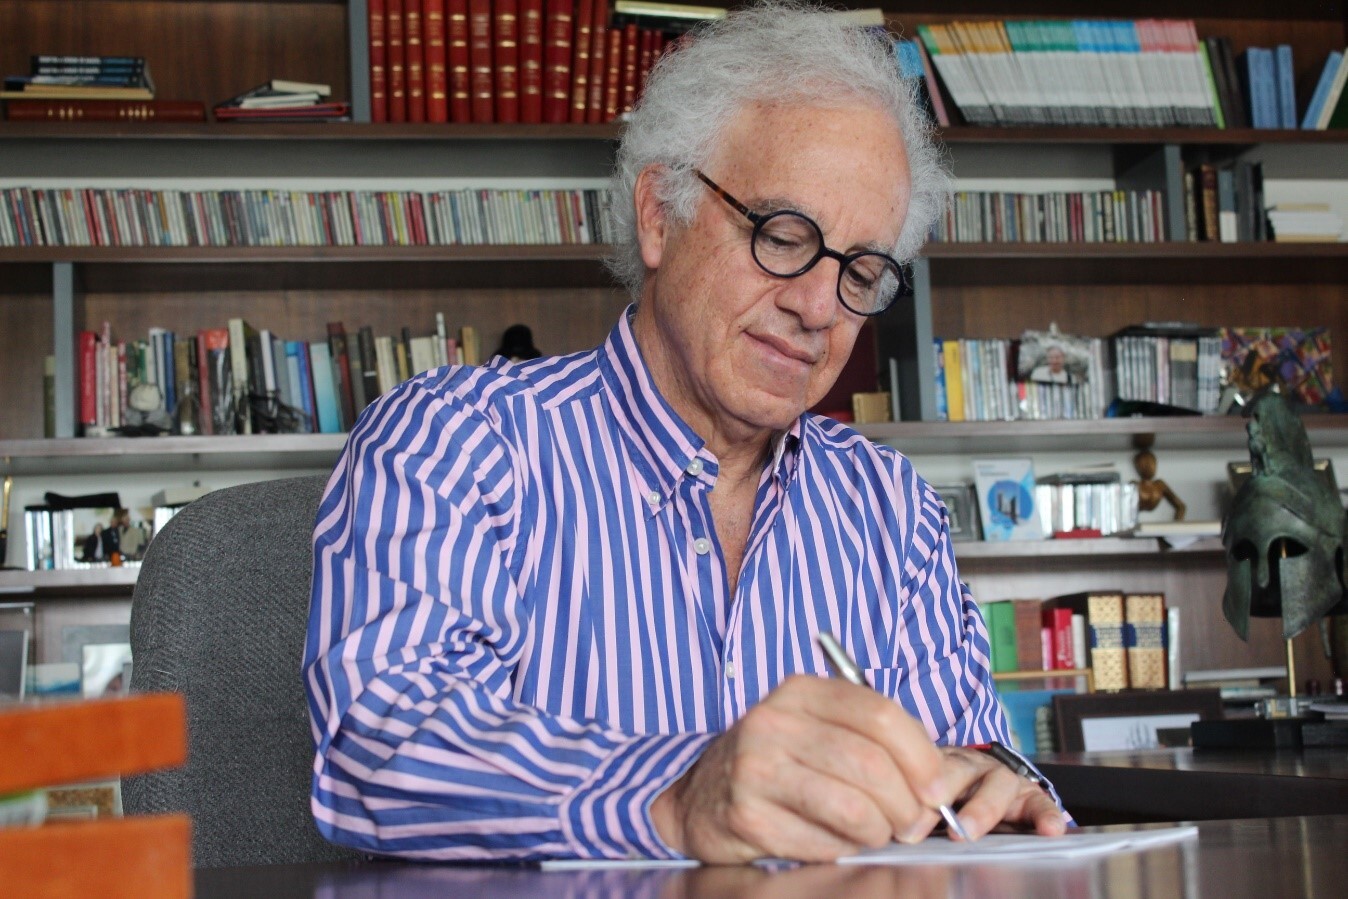 El escritor mexicano Francisco Martín Moreno ha decidido tomar distancia respecto a la política y la historia, descansar, tomarse un respiro y dirigir su escritura a un lugar más lúdico como lo es la ficción a secas